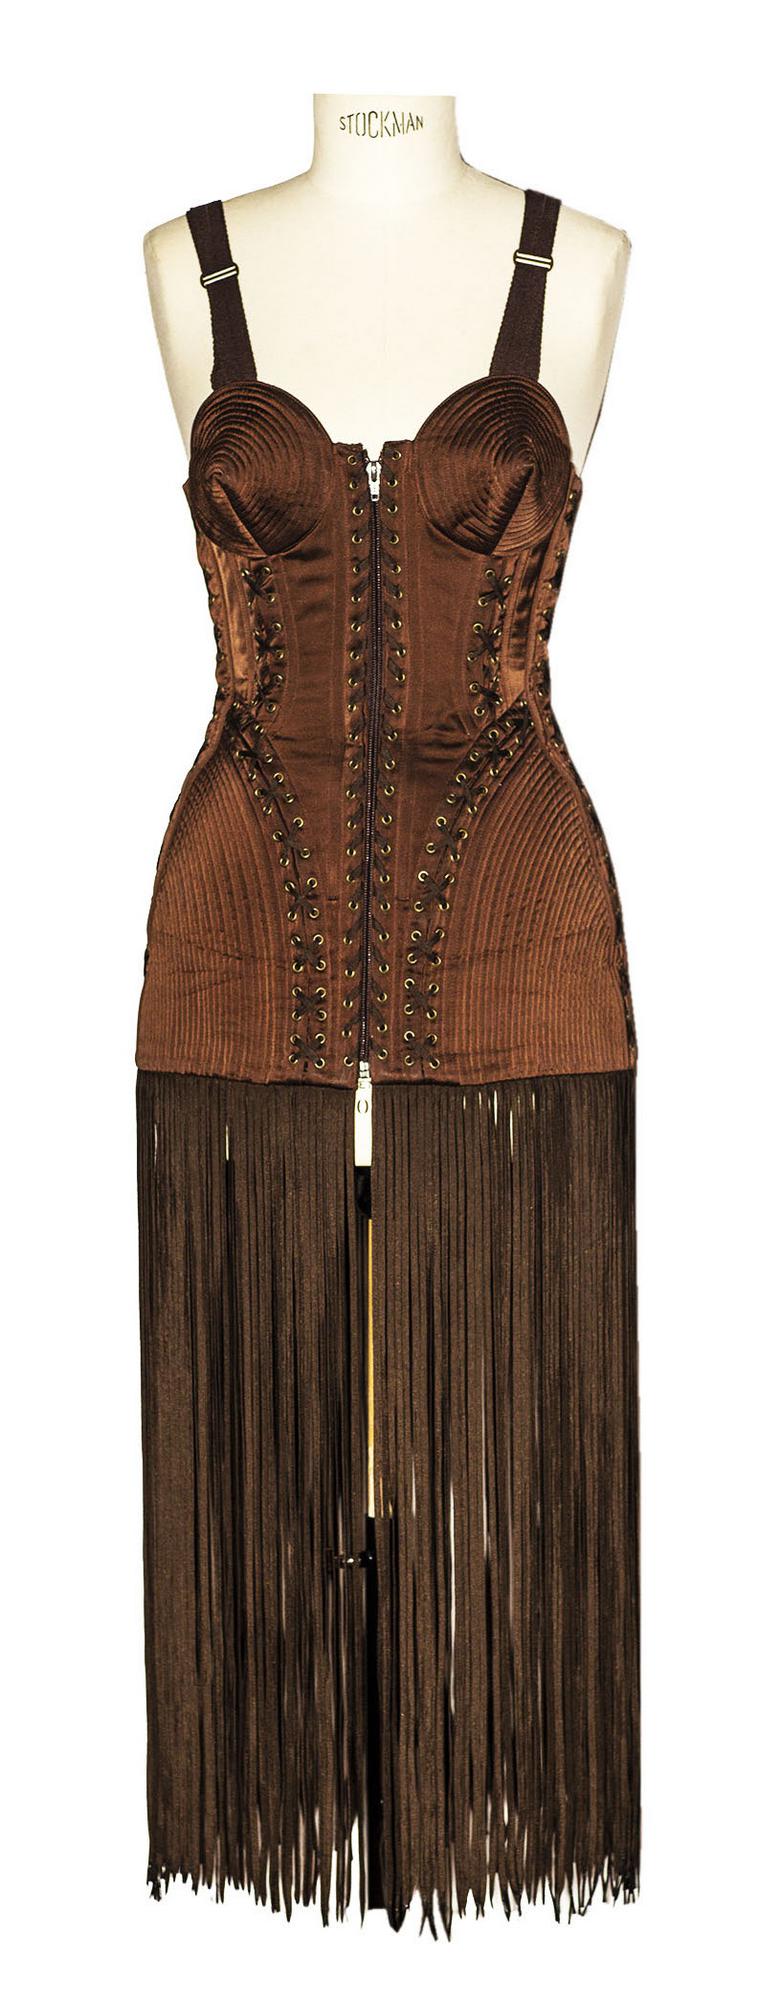 Jean Paul Gaultier SHOESTRINGS CORSET Description: Esemplare corset stitched...